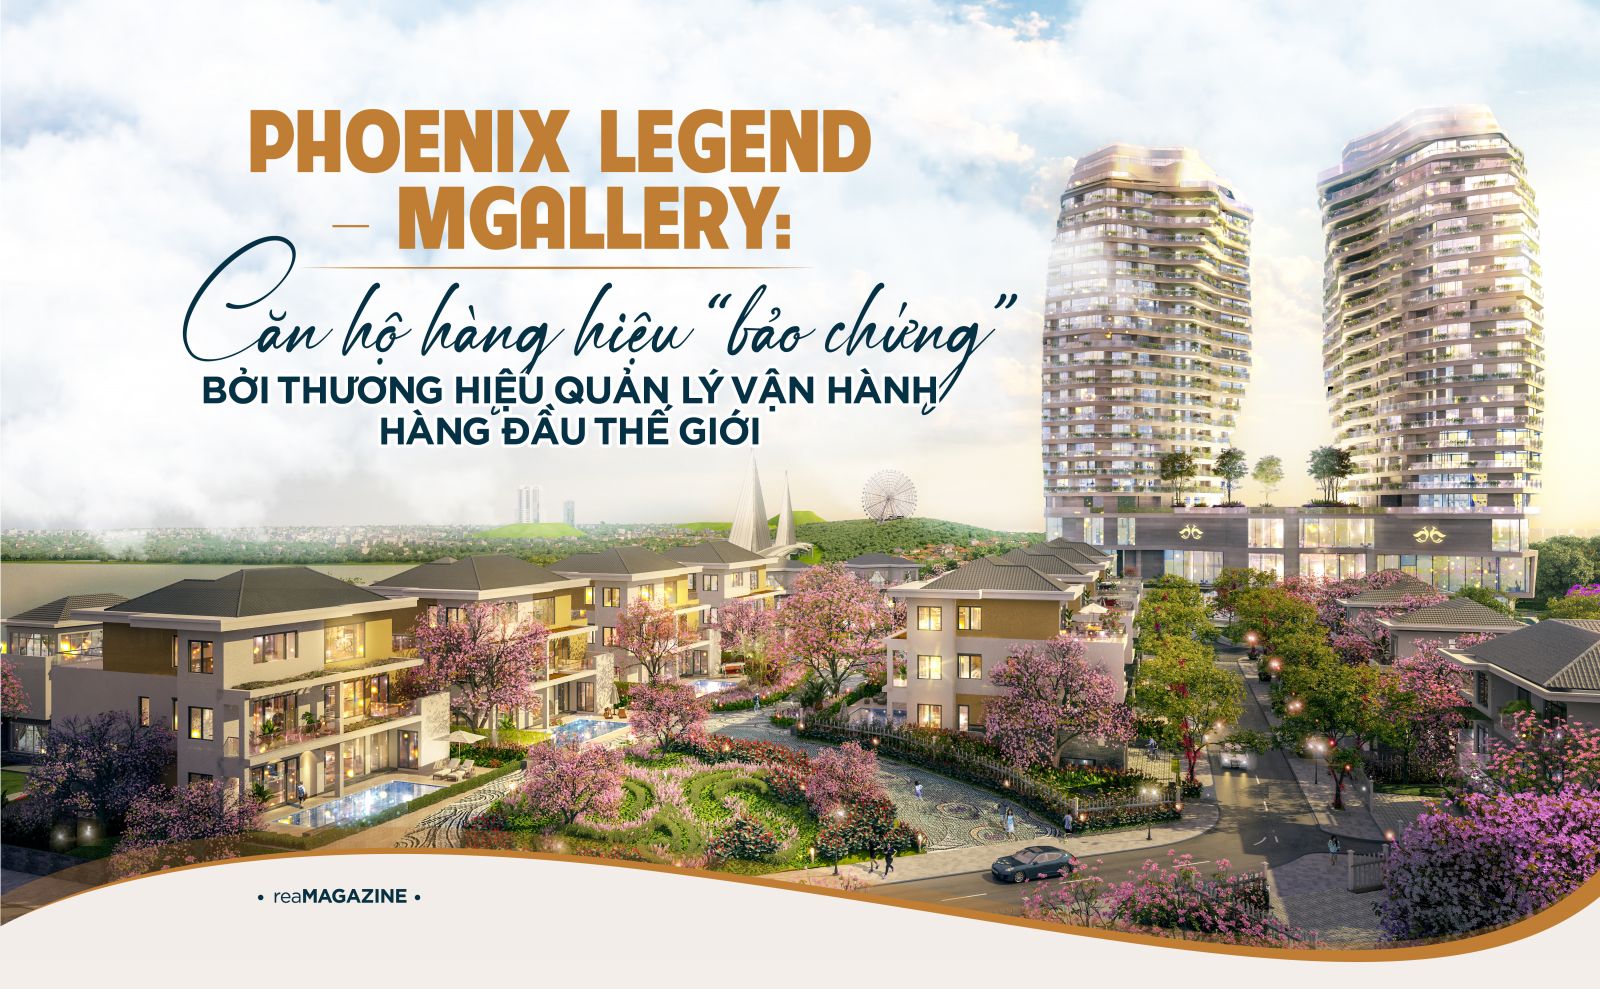 Phoenix Legend – MGallery: Căn hộ hàng hiệu "bảo chứng" bởi thương hiệu quản lý vận hành hàng đầu thế giới